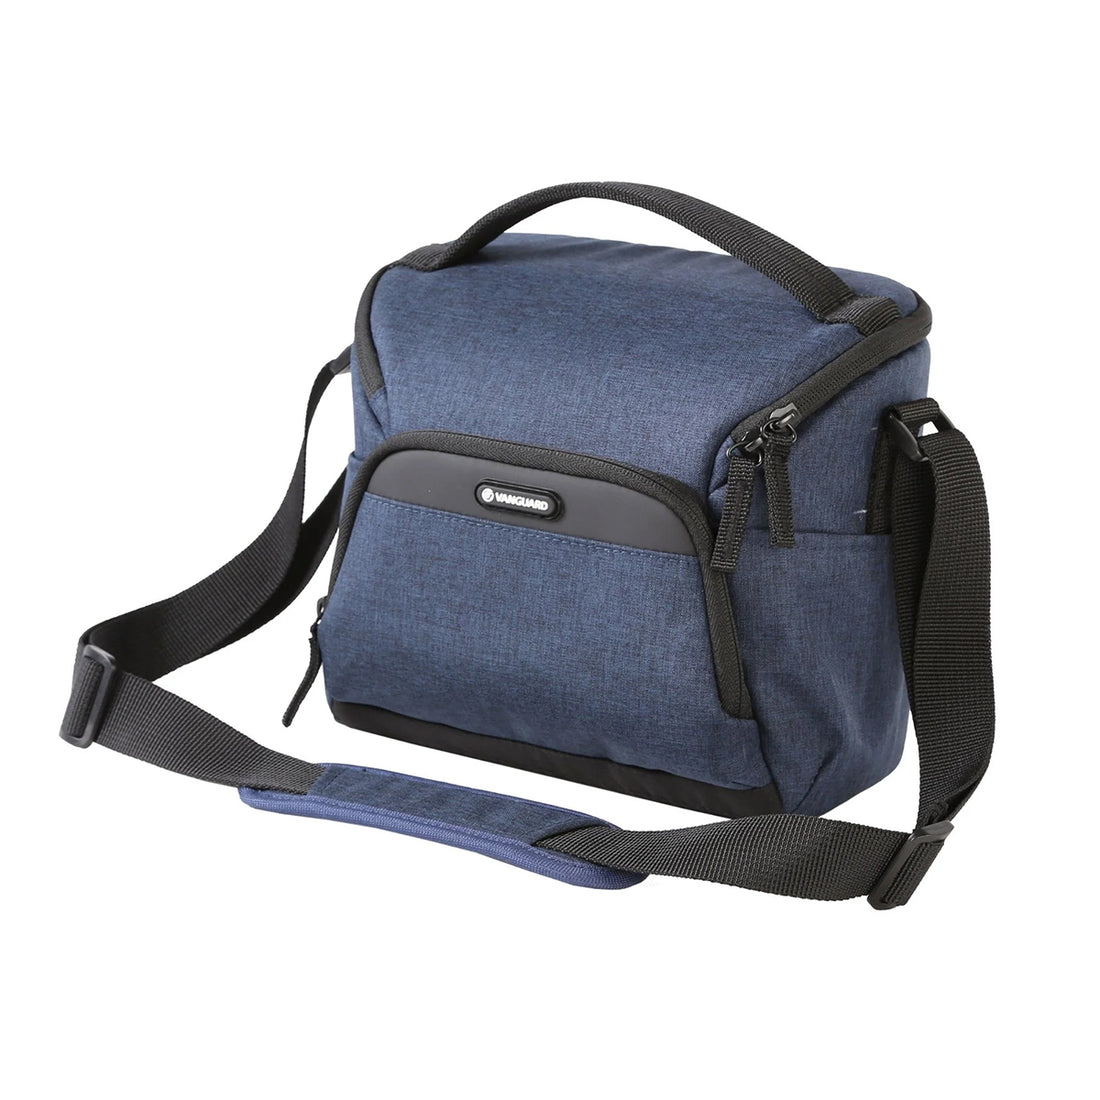 Vanguard Vesta Aspire 21 NV Modern, Compact, Lightweight Shoulder Bag - Blue